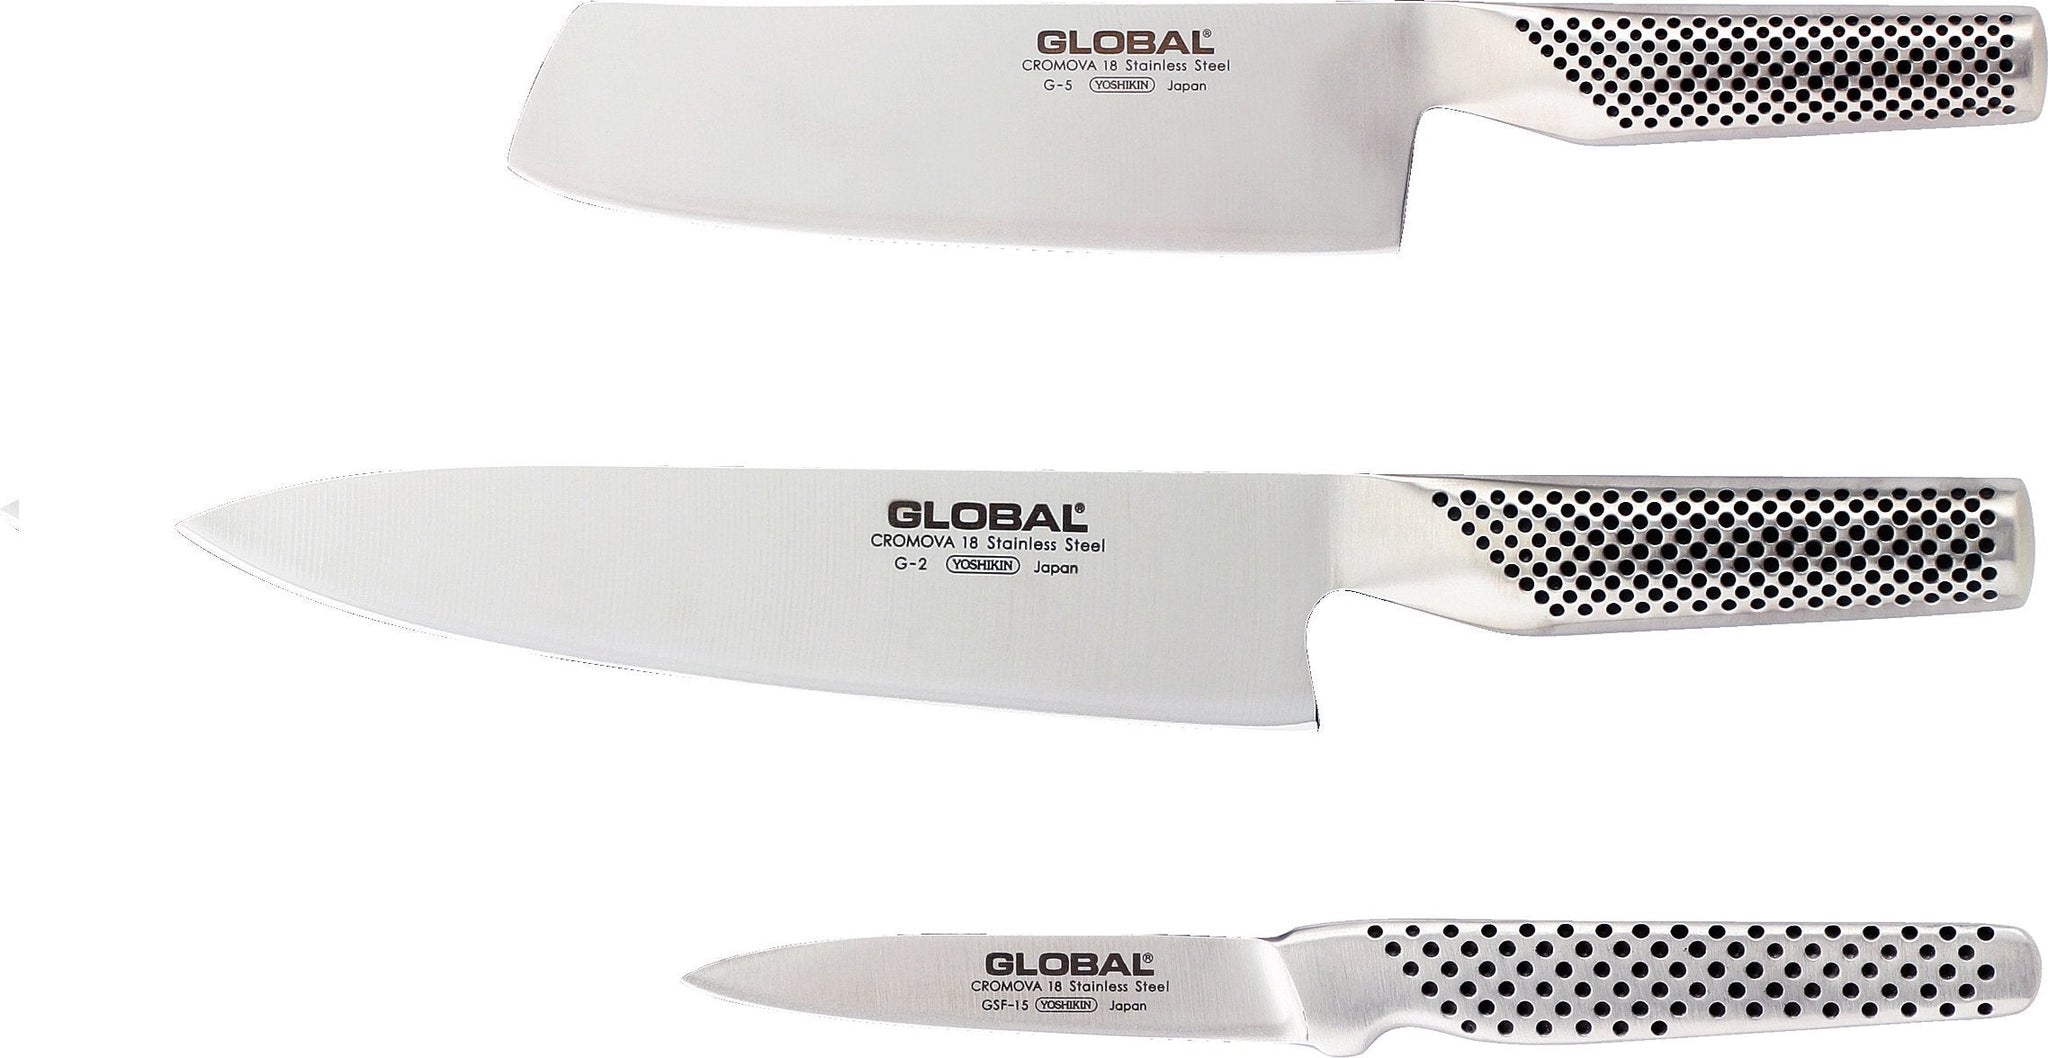 Global - 3 Piece Knife Set 8" Cook's Knife (G2) - 5.5" Vegetable Knife (GS5) - & 3" Peeling Knife (GSF15) - G2515